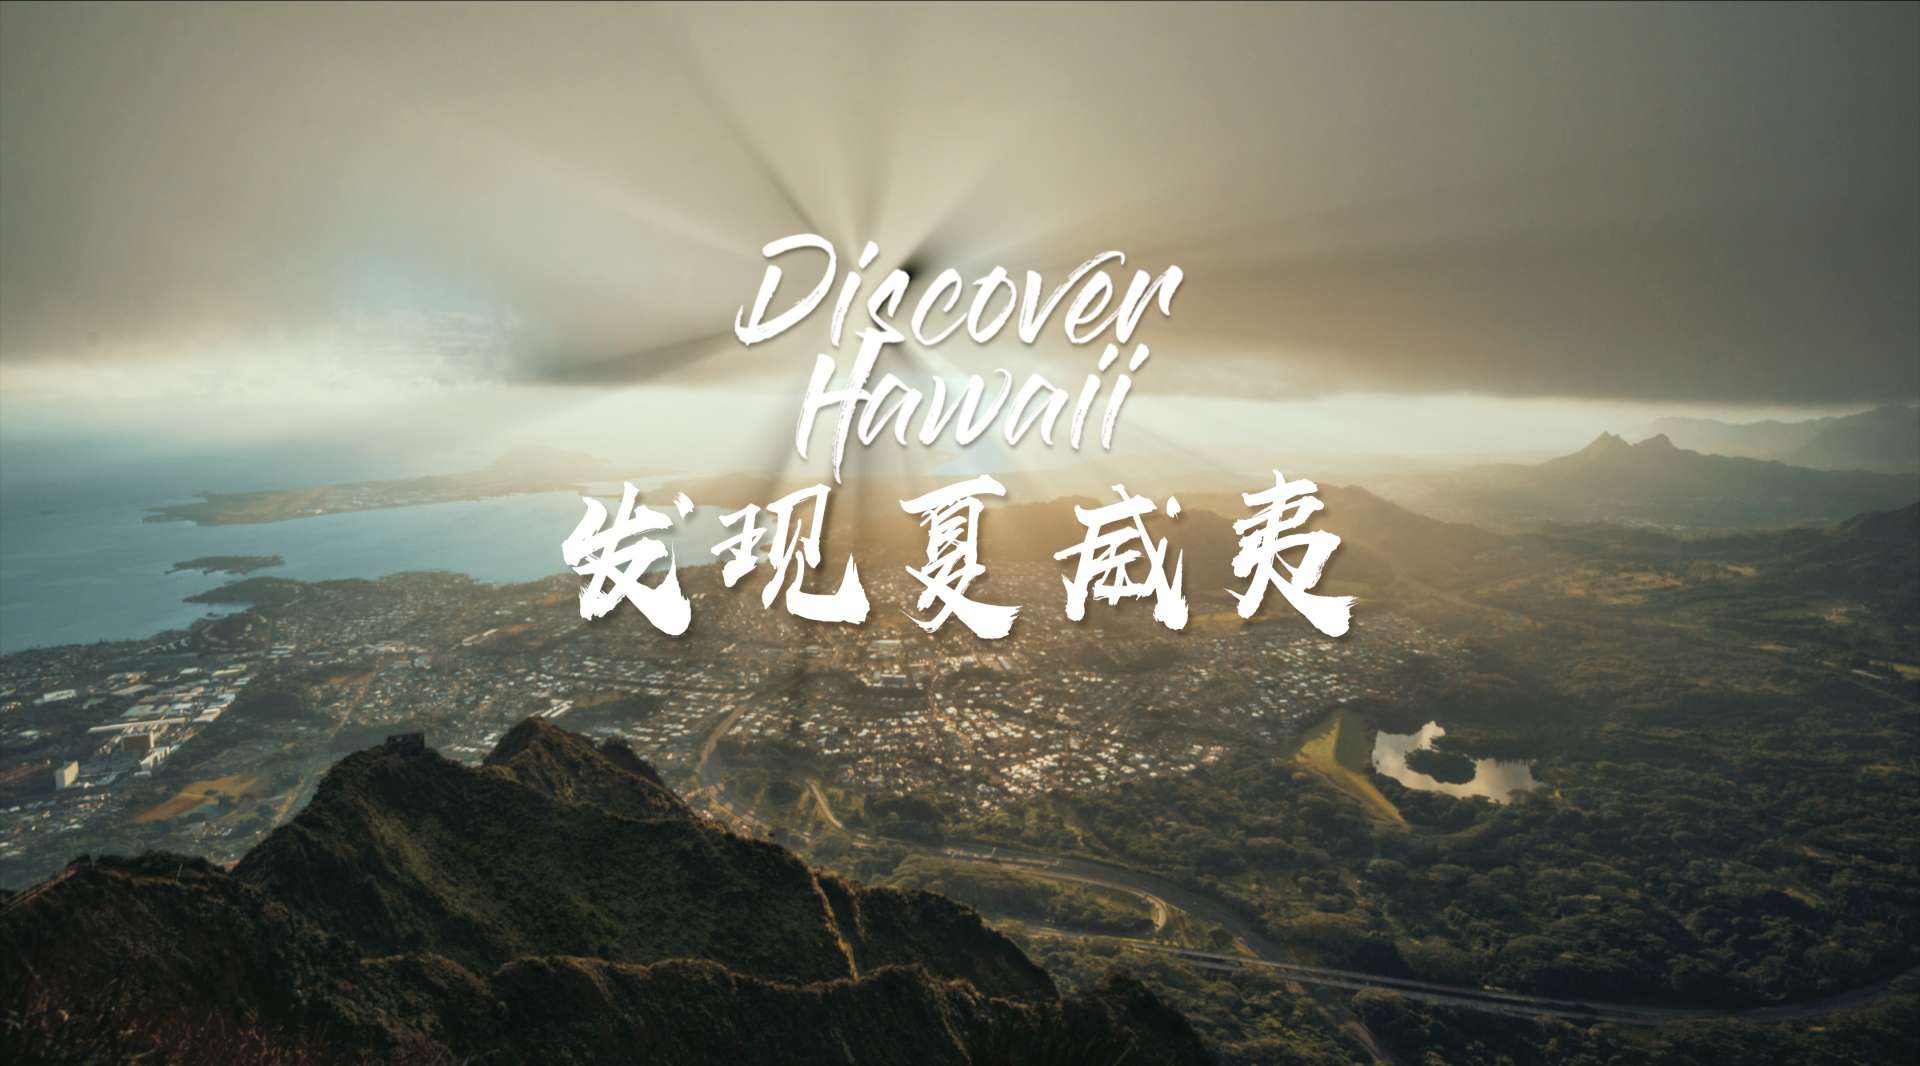 《发现夏威夷》自驾旅行短片 | 探索绝佳的小众景点 | 夏威夷天梯